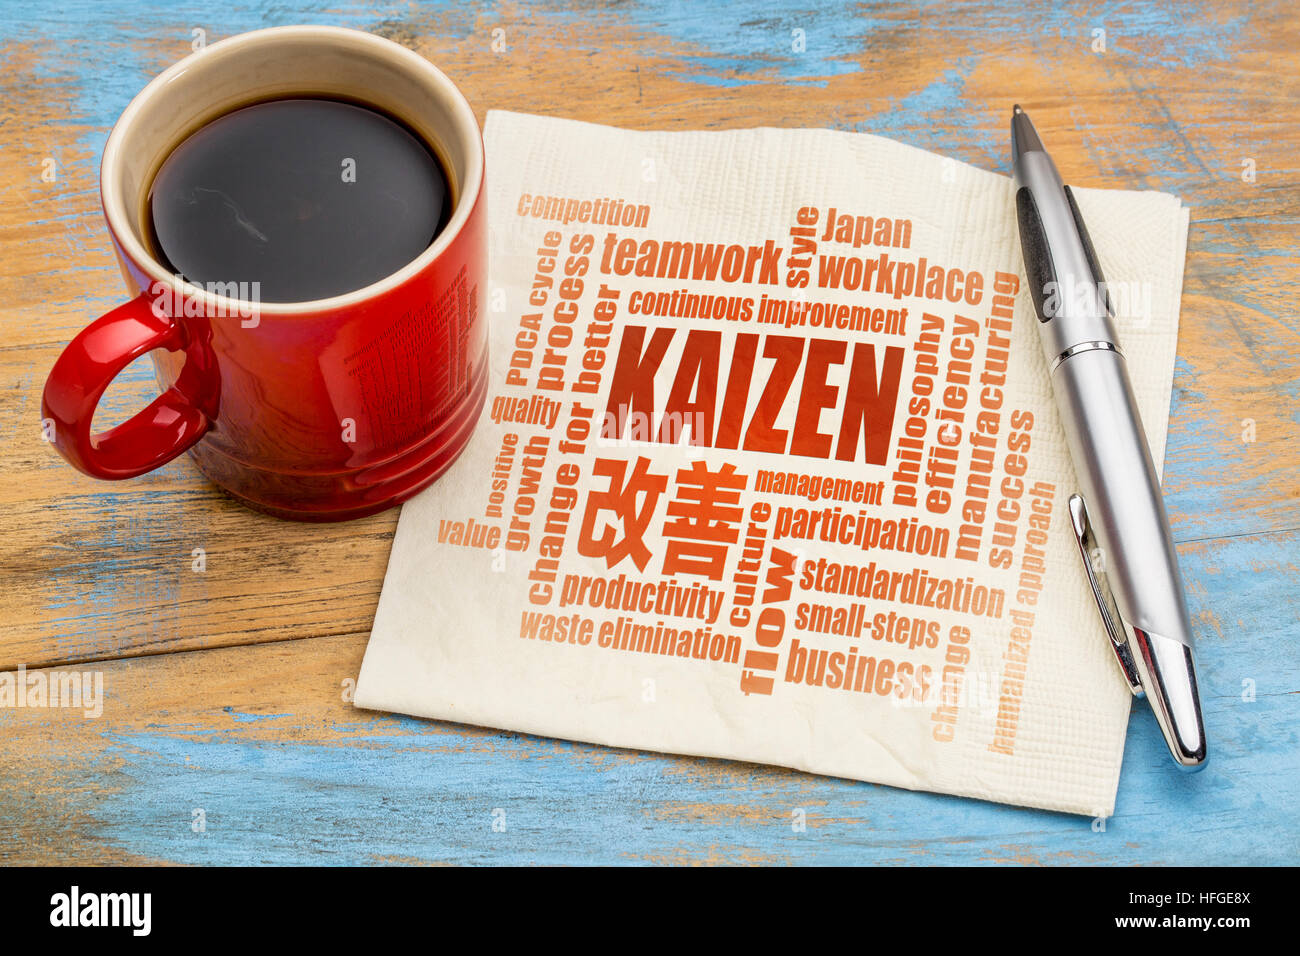 Kaizen - japanische kontinuierliche Verbesserung Konzept - Wortwolke auf einer Serviette mit einer Tasse Kaffee Stockfoto